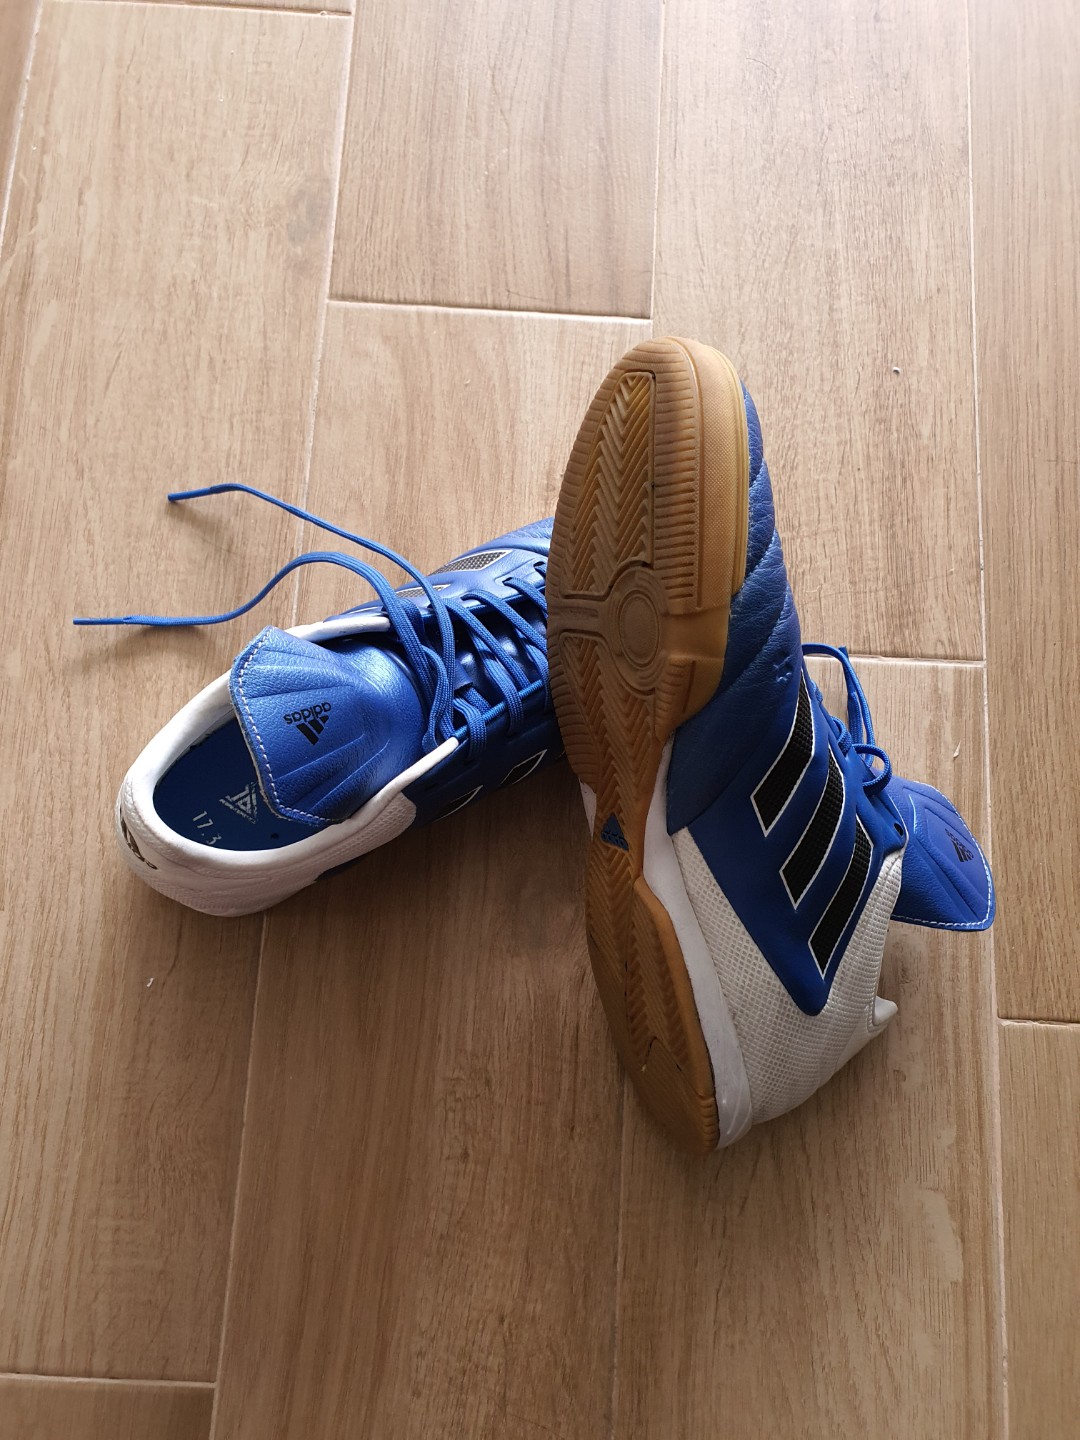 Adidas Copa indoor soccer shoes, Men's 